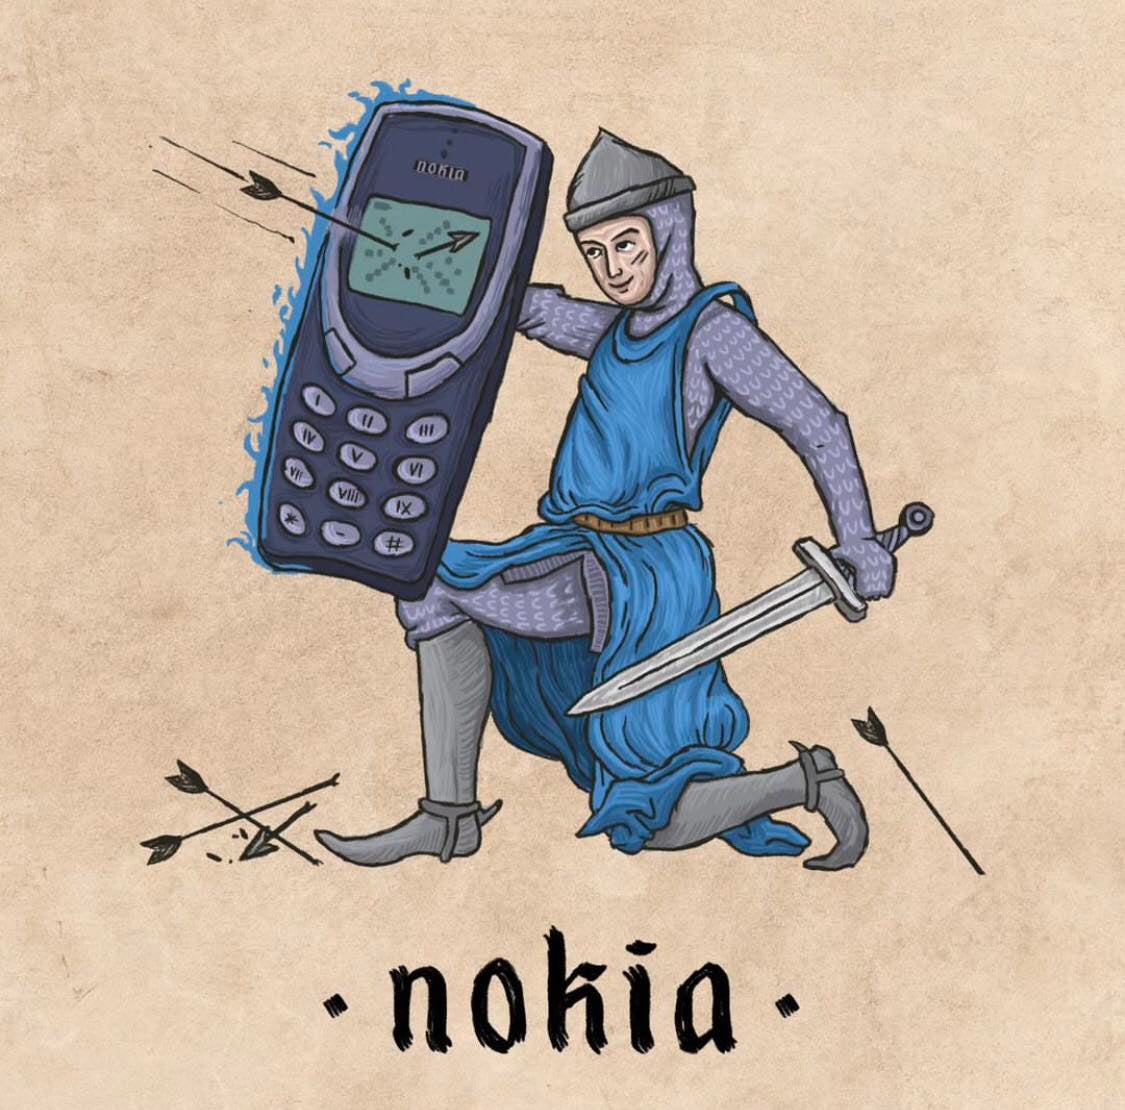 โนเกีย (Nokia)